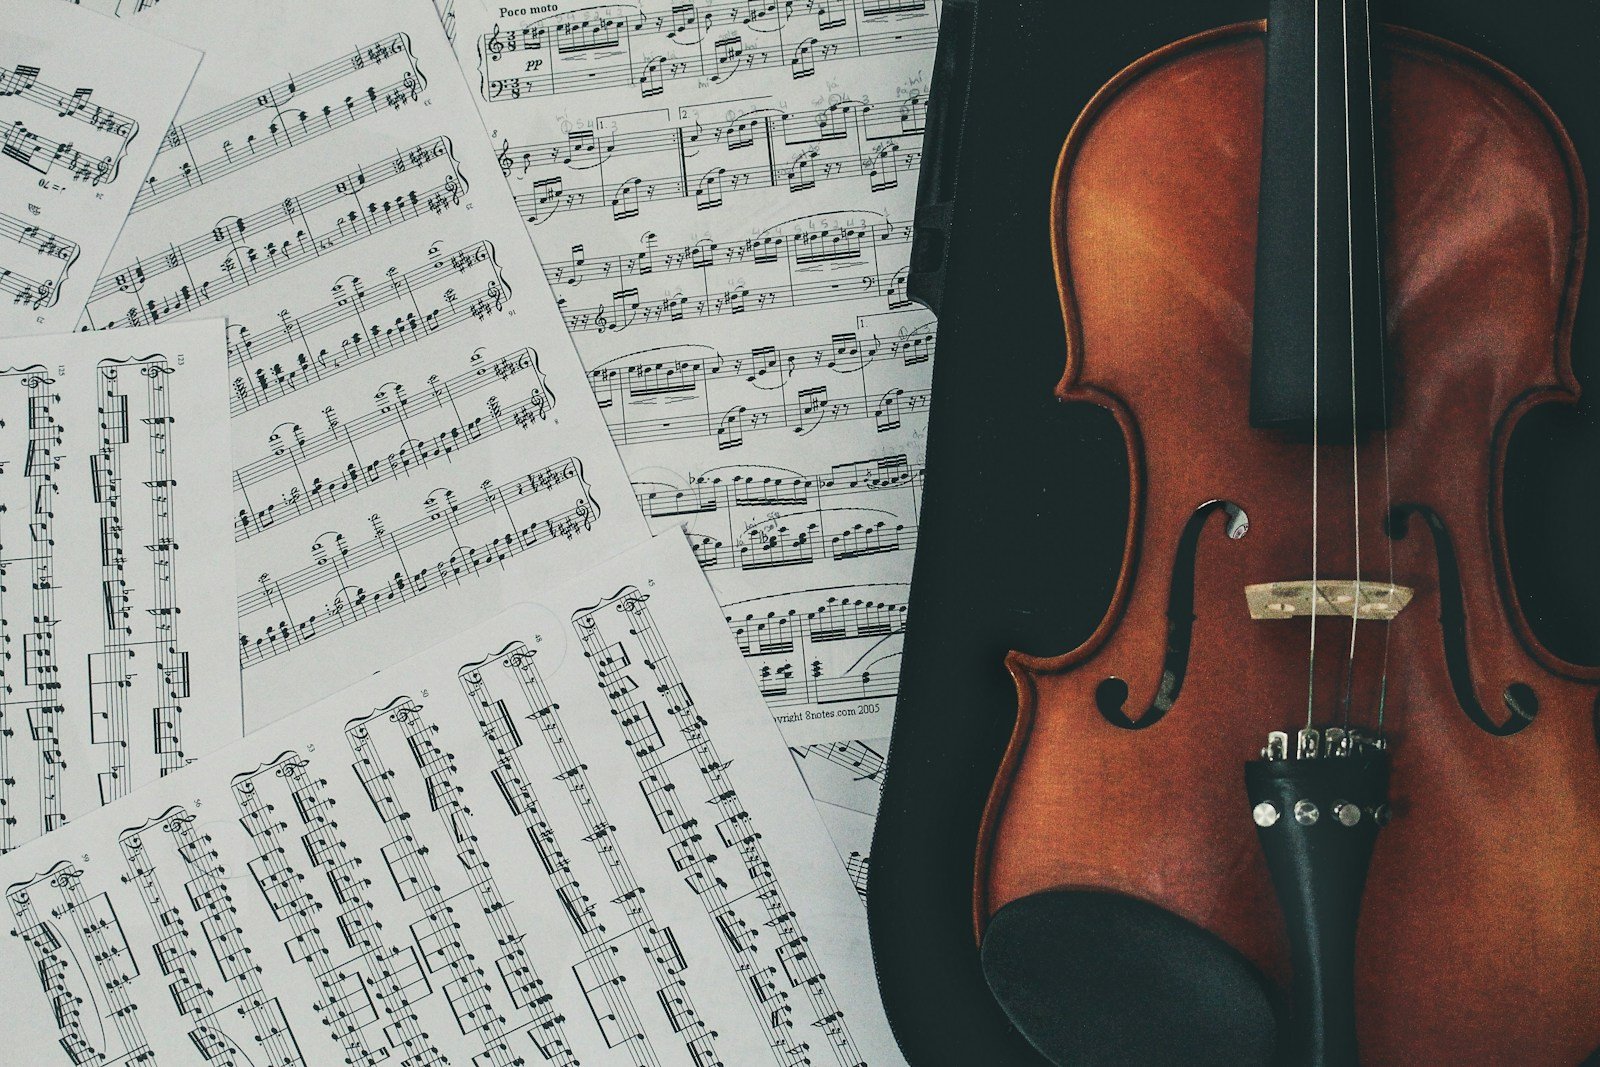 Zenei sokszínűség: Évszázadok múltán is élő dallamok és zenei stílusok